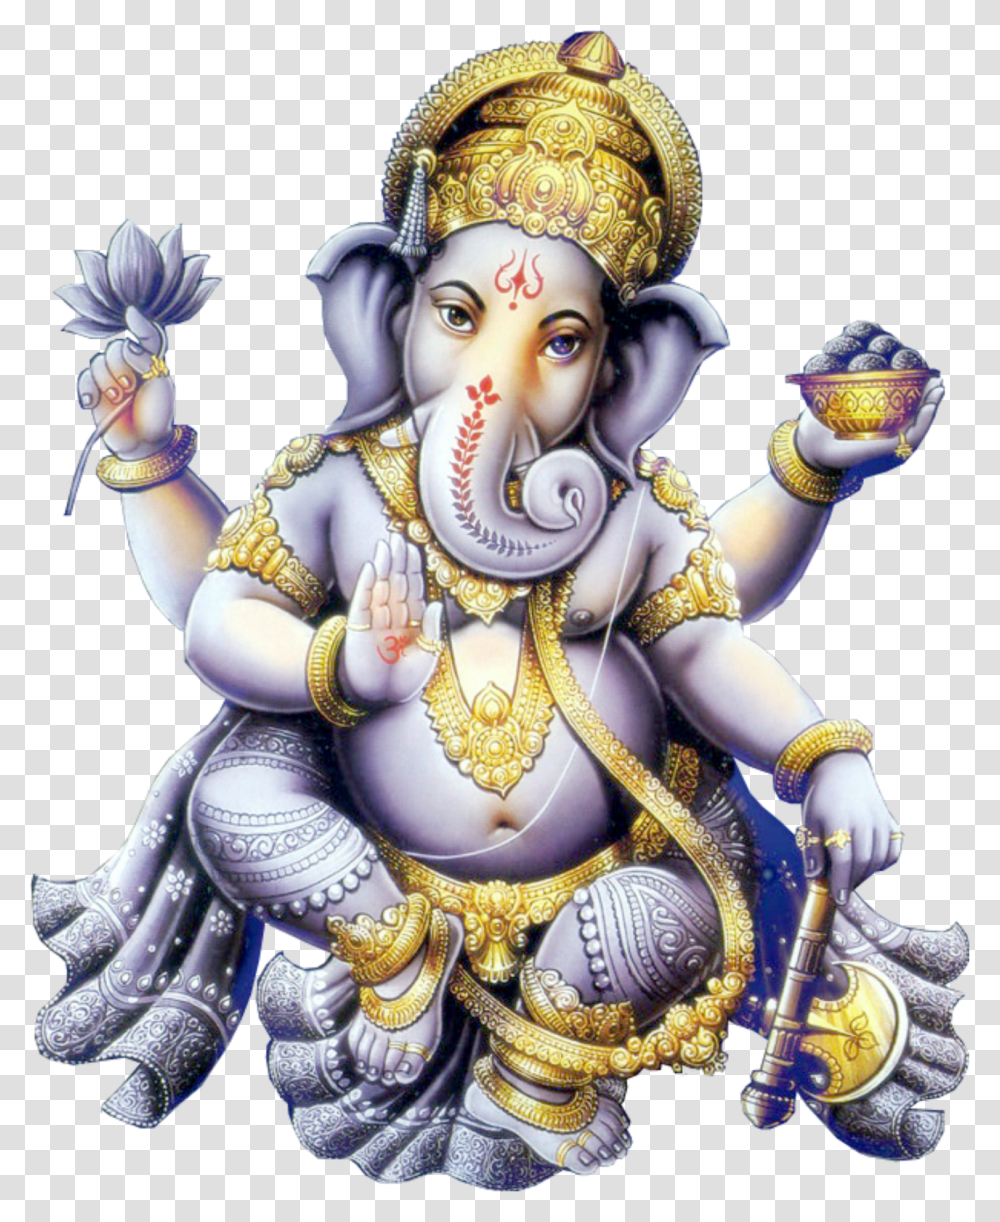 Ganesh Oom Ganeshaya Namonamaha Ufe Ufe Ufe Dcomplete Lord Ganesh Hd, Person, Doll, Porcelain Transparent Png